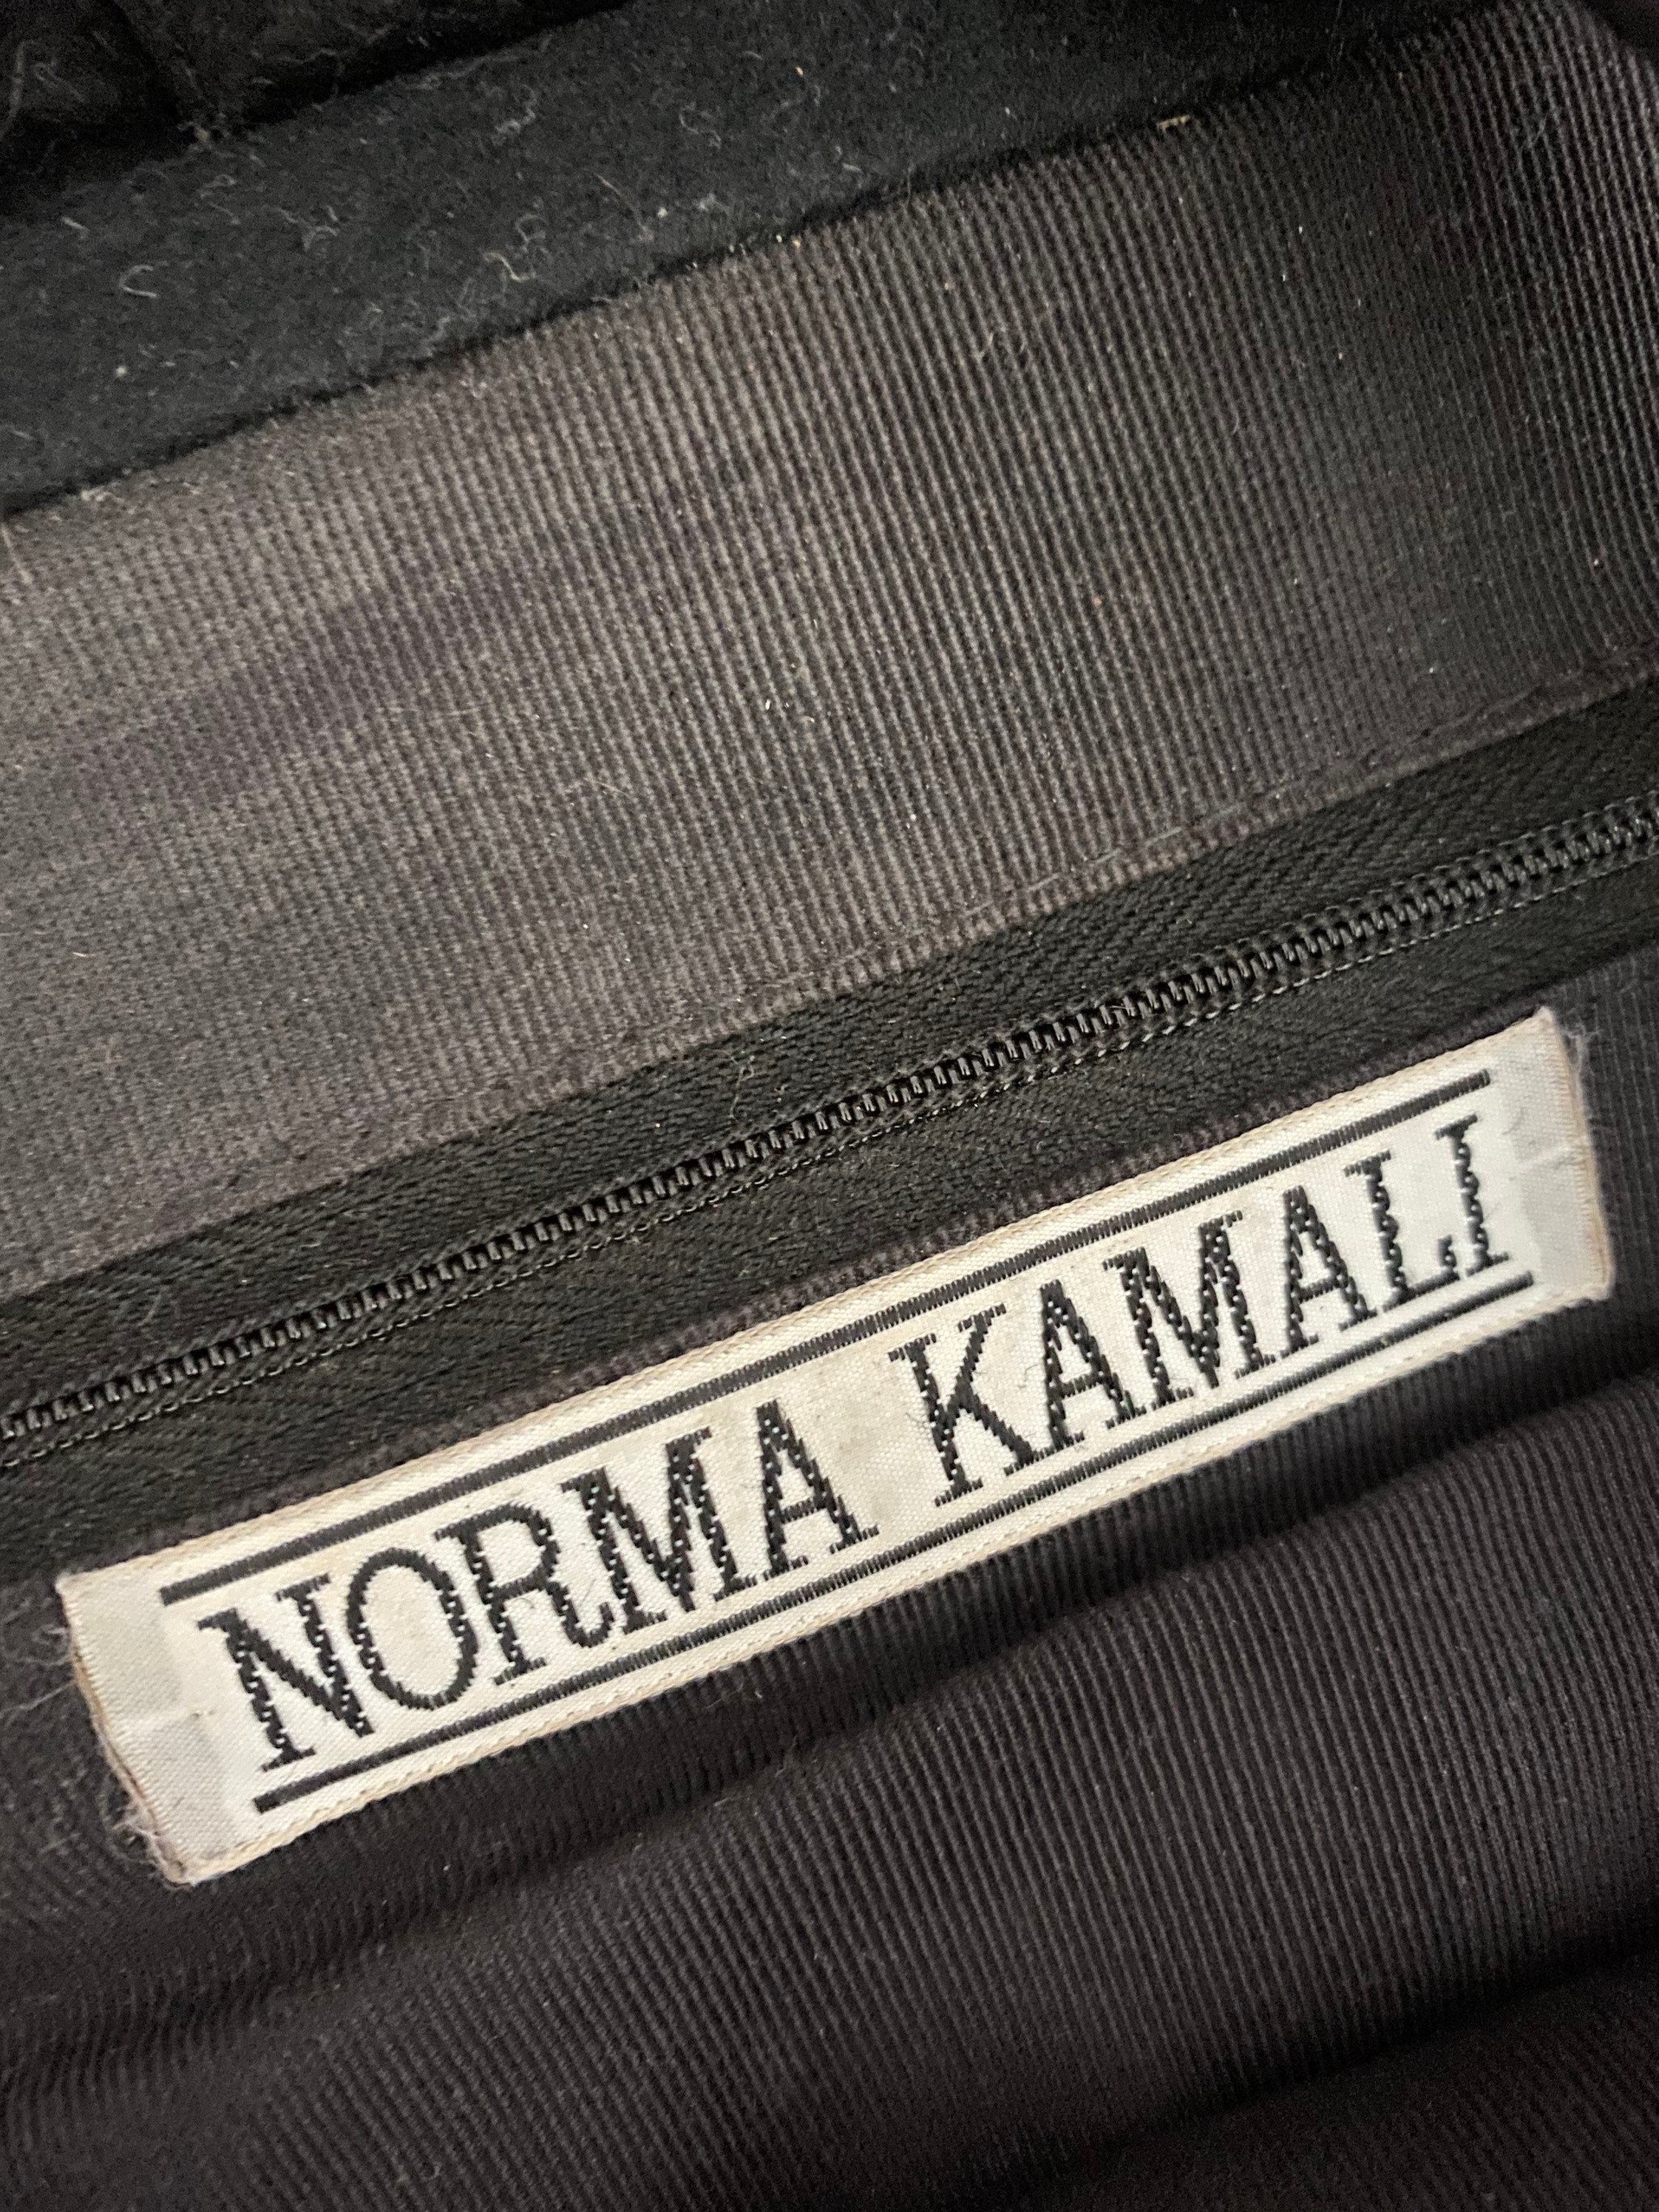 80s NORMA KAMALI black shoulder bag, vintage 80s 90s club rave